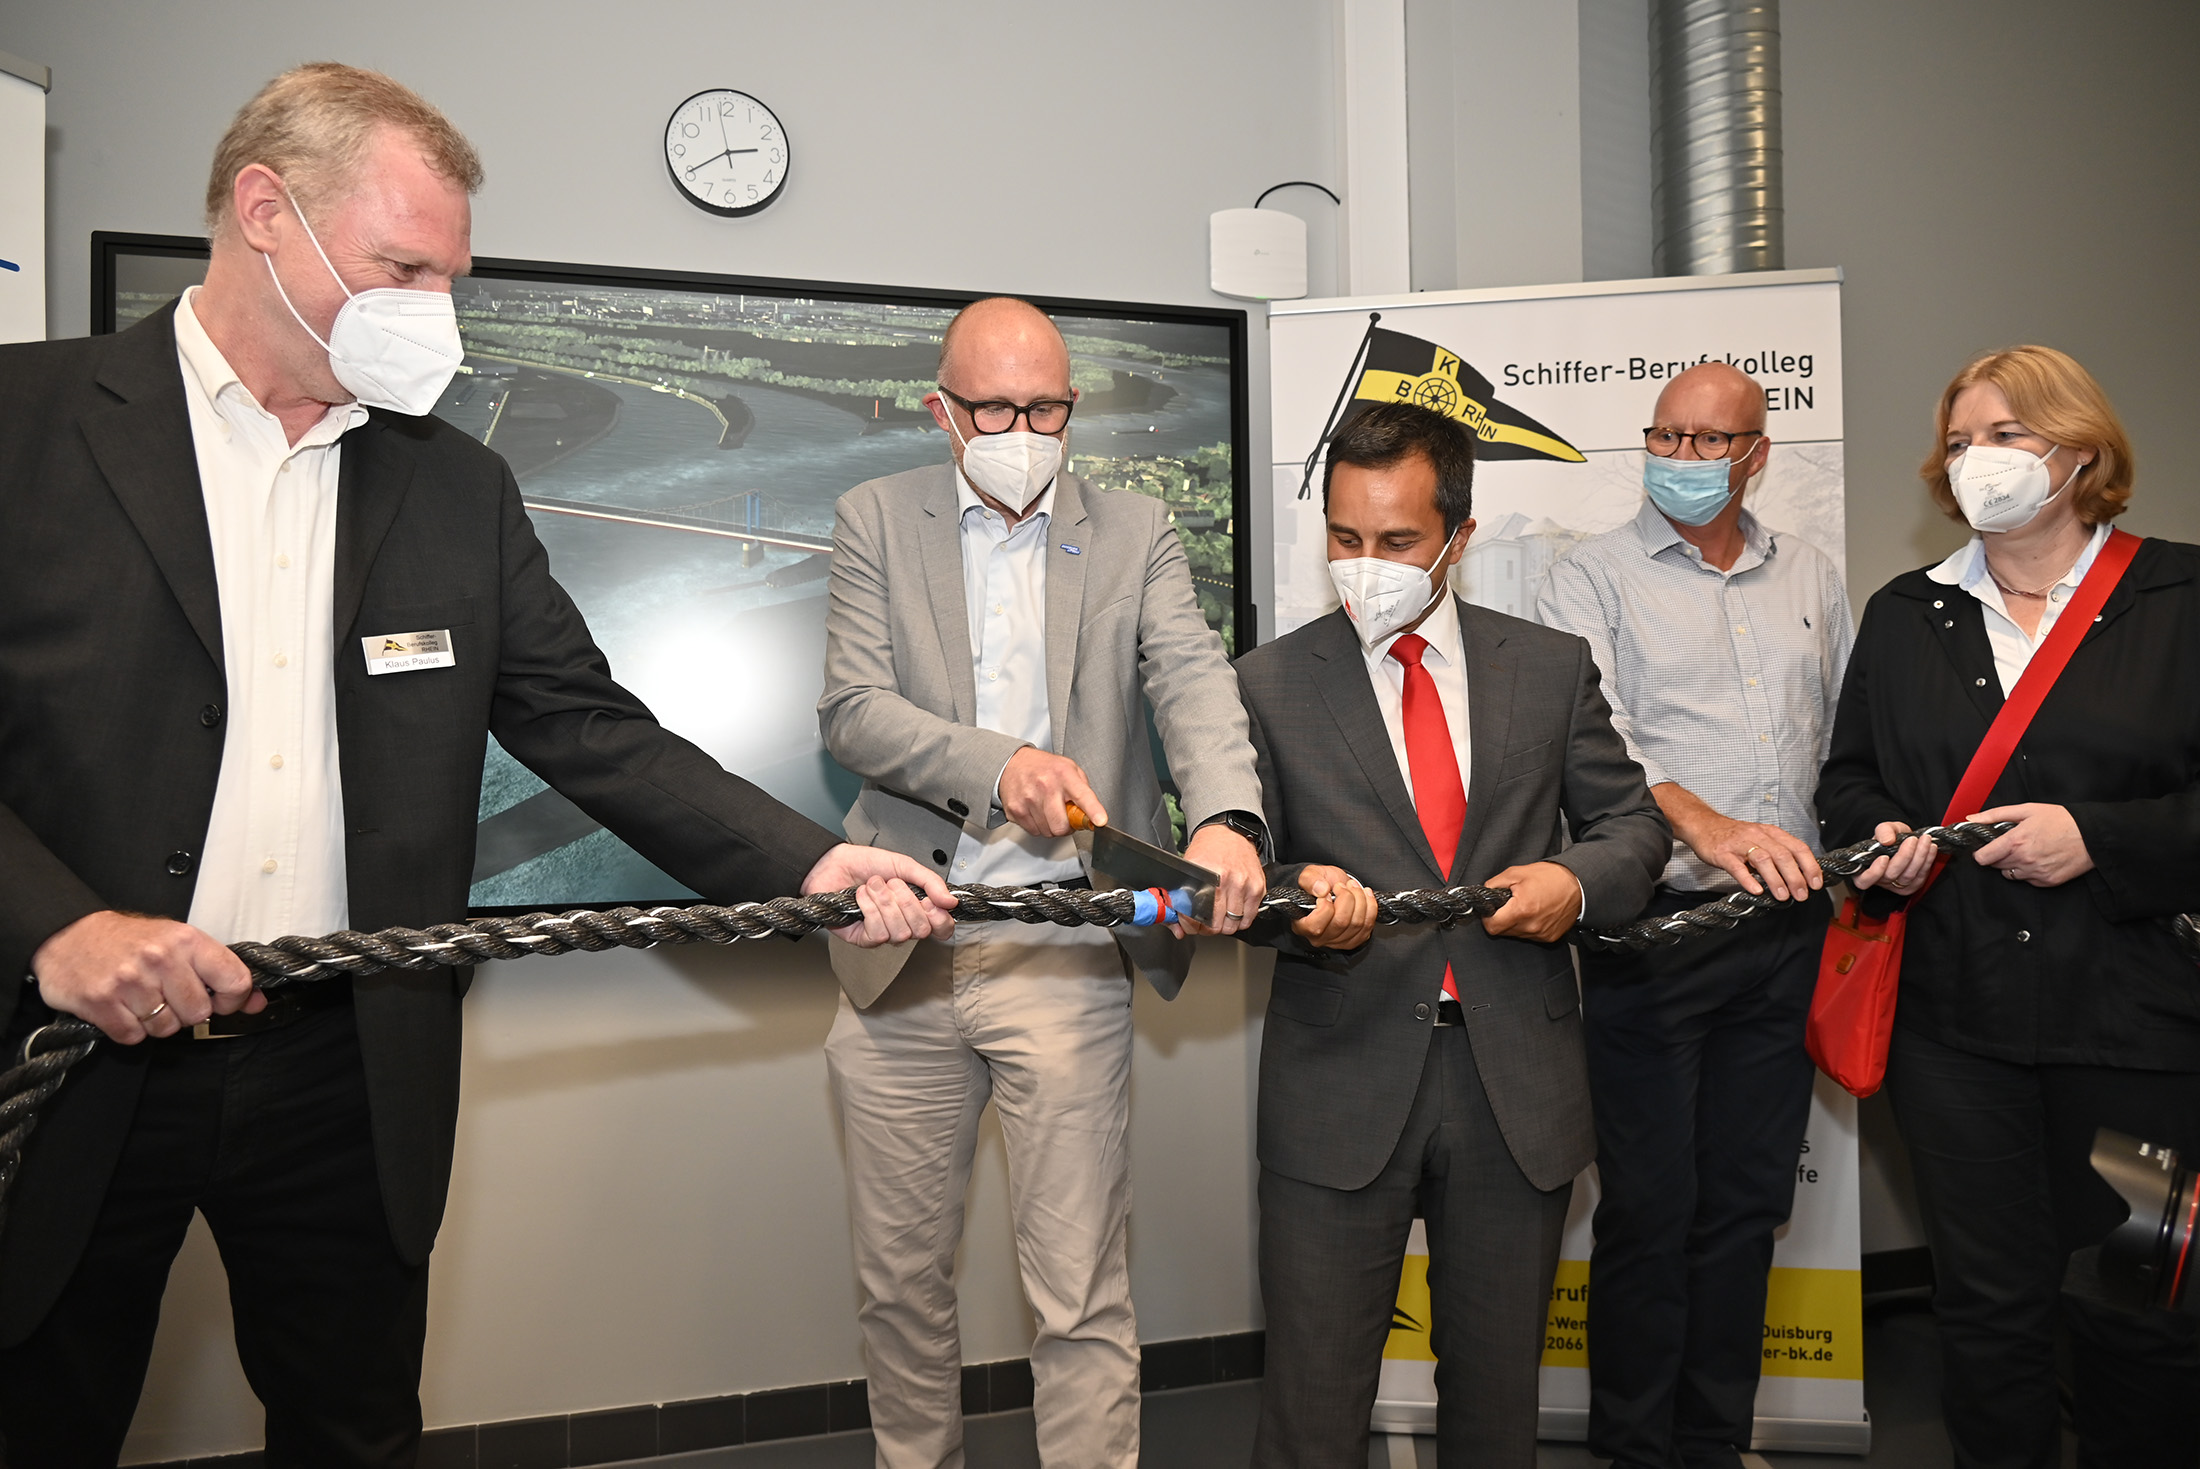 Eröffnung des Flachwasserfahrsimulators SANDRA II im Schifferberufskolleg RHEIN